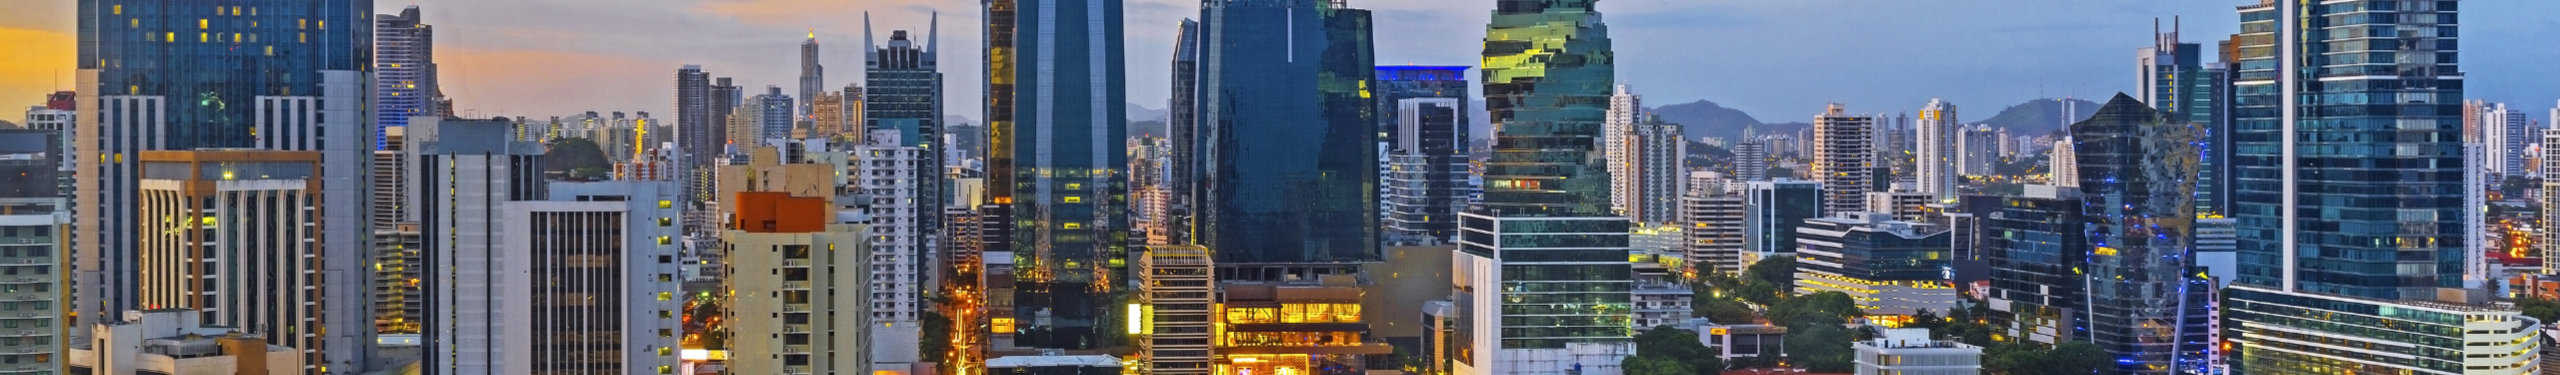 Panama City, Panama skyline